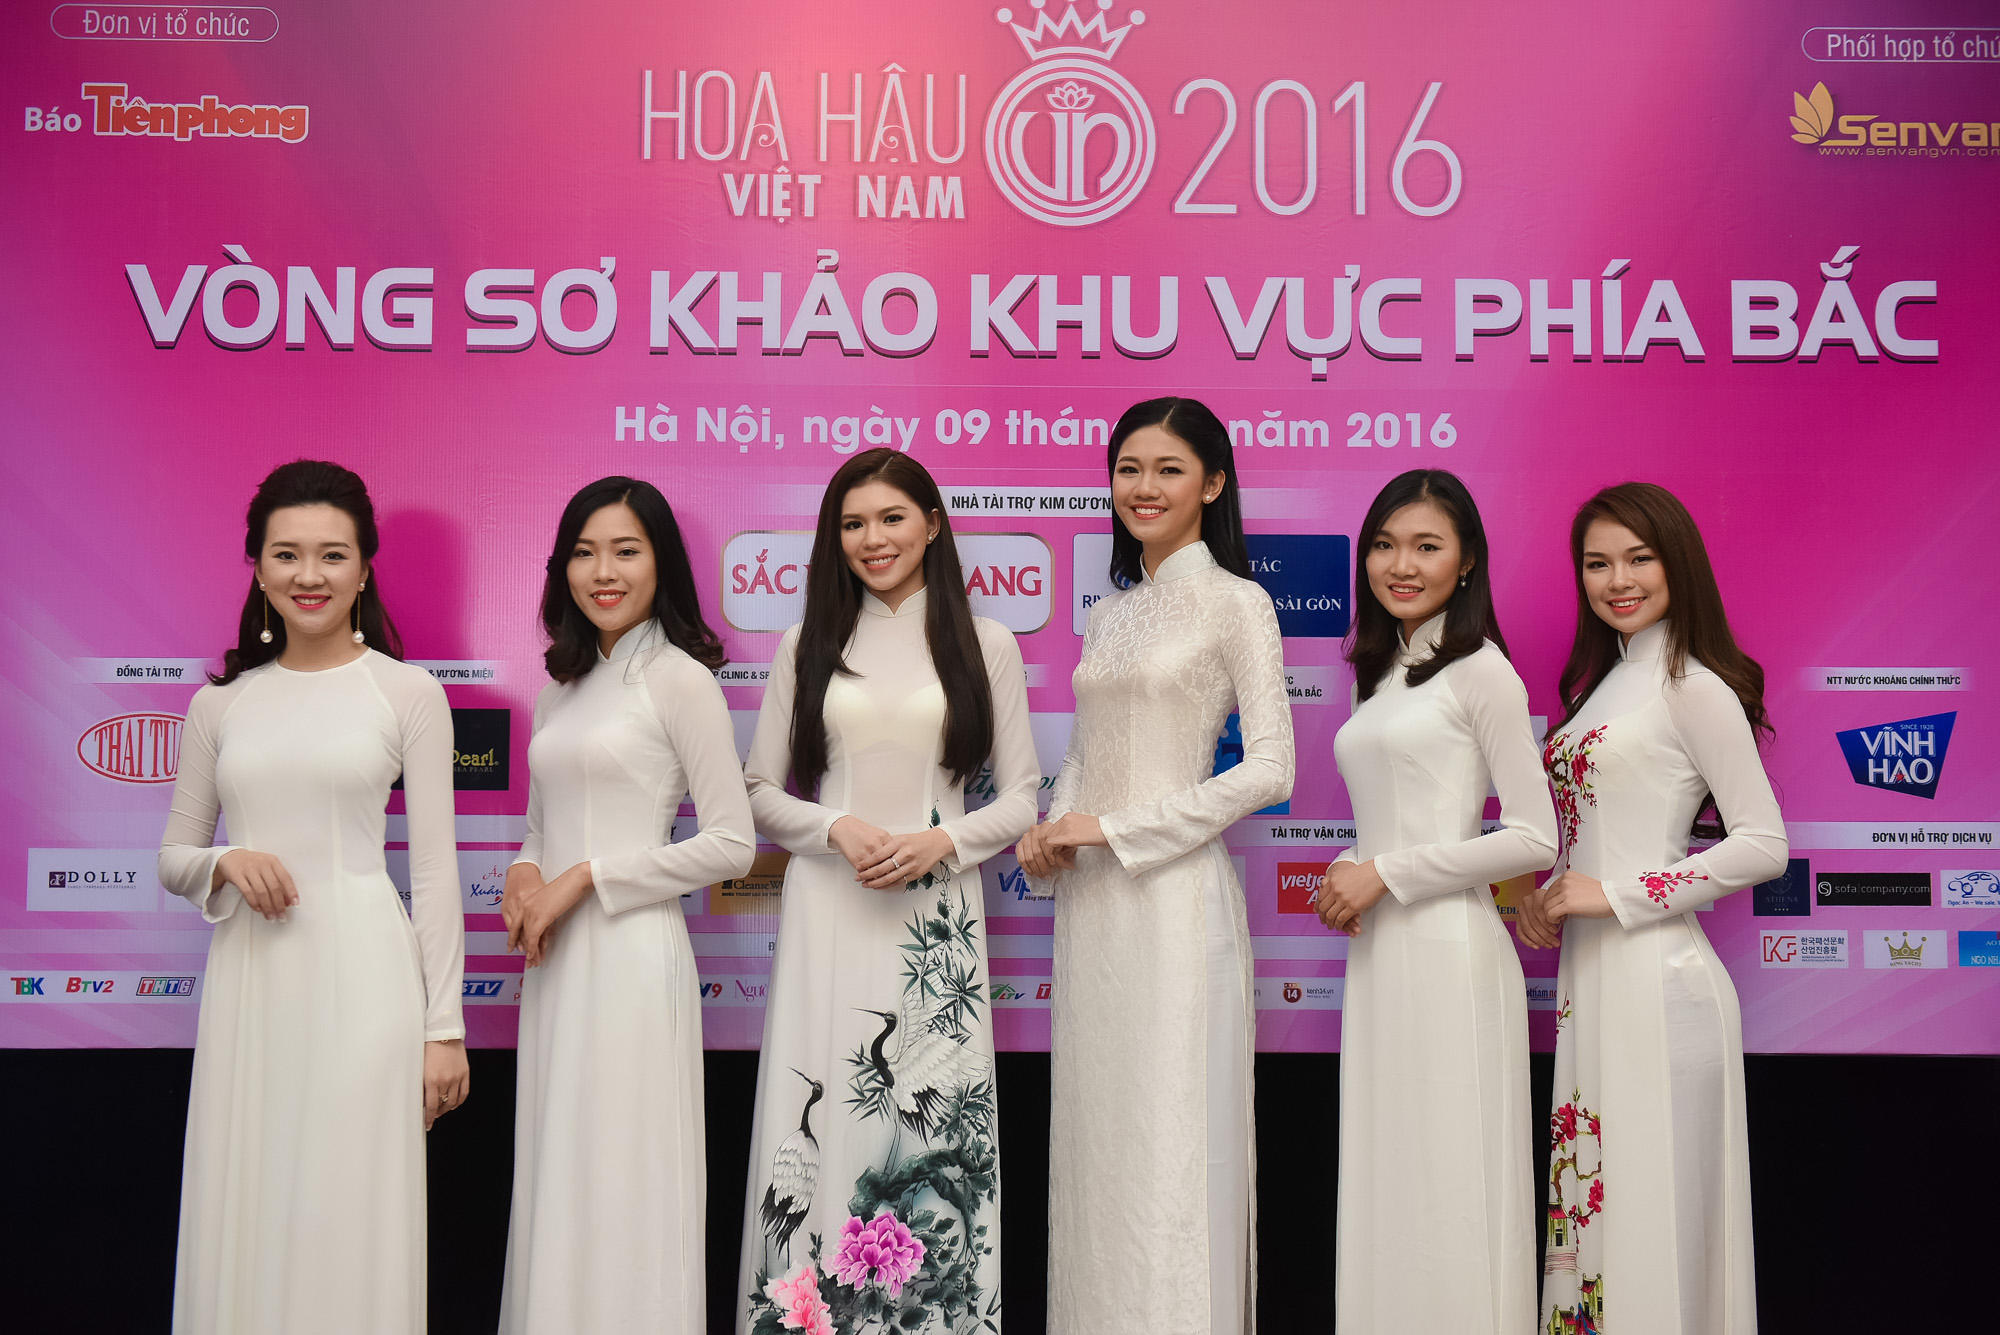 Vào sáng ngày 9/7 vừa qua vòng sơ khảo Hoa hậu Việt Nam 2016 phía Bắc đã được diễn ra tại Hà Nội. Theo đó, đã chọn ra 32 gương mặt xinh đẹp và tài năng nhất vào vòng chung khảo Hoa hậu Việt Nam 2016.